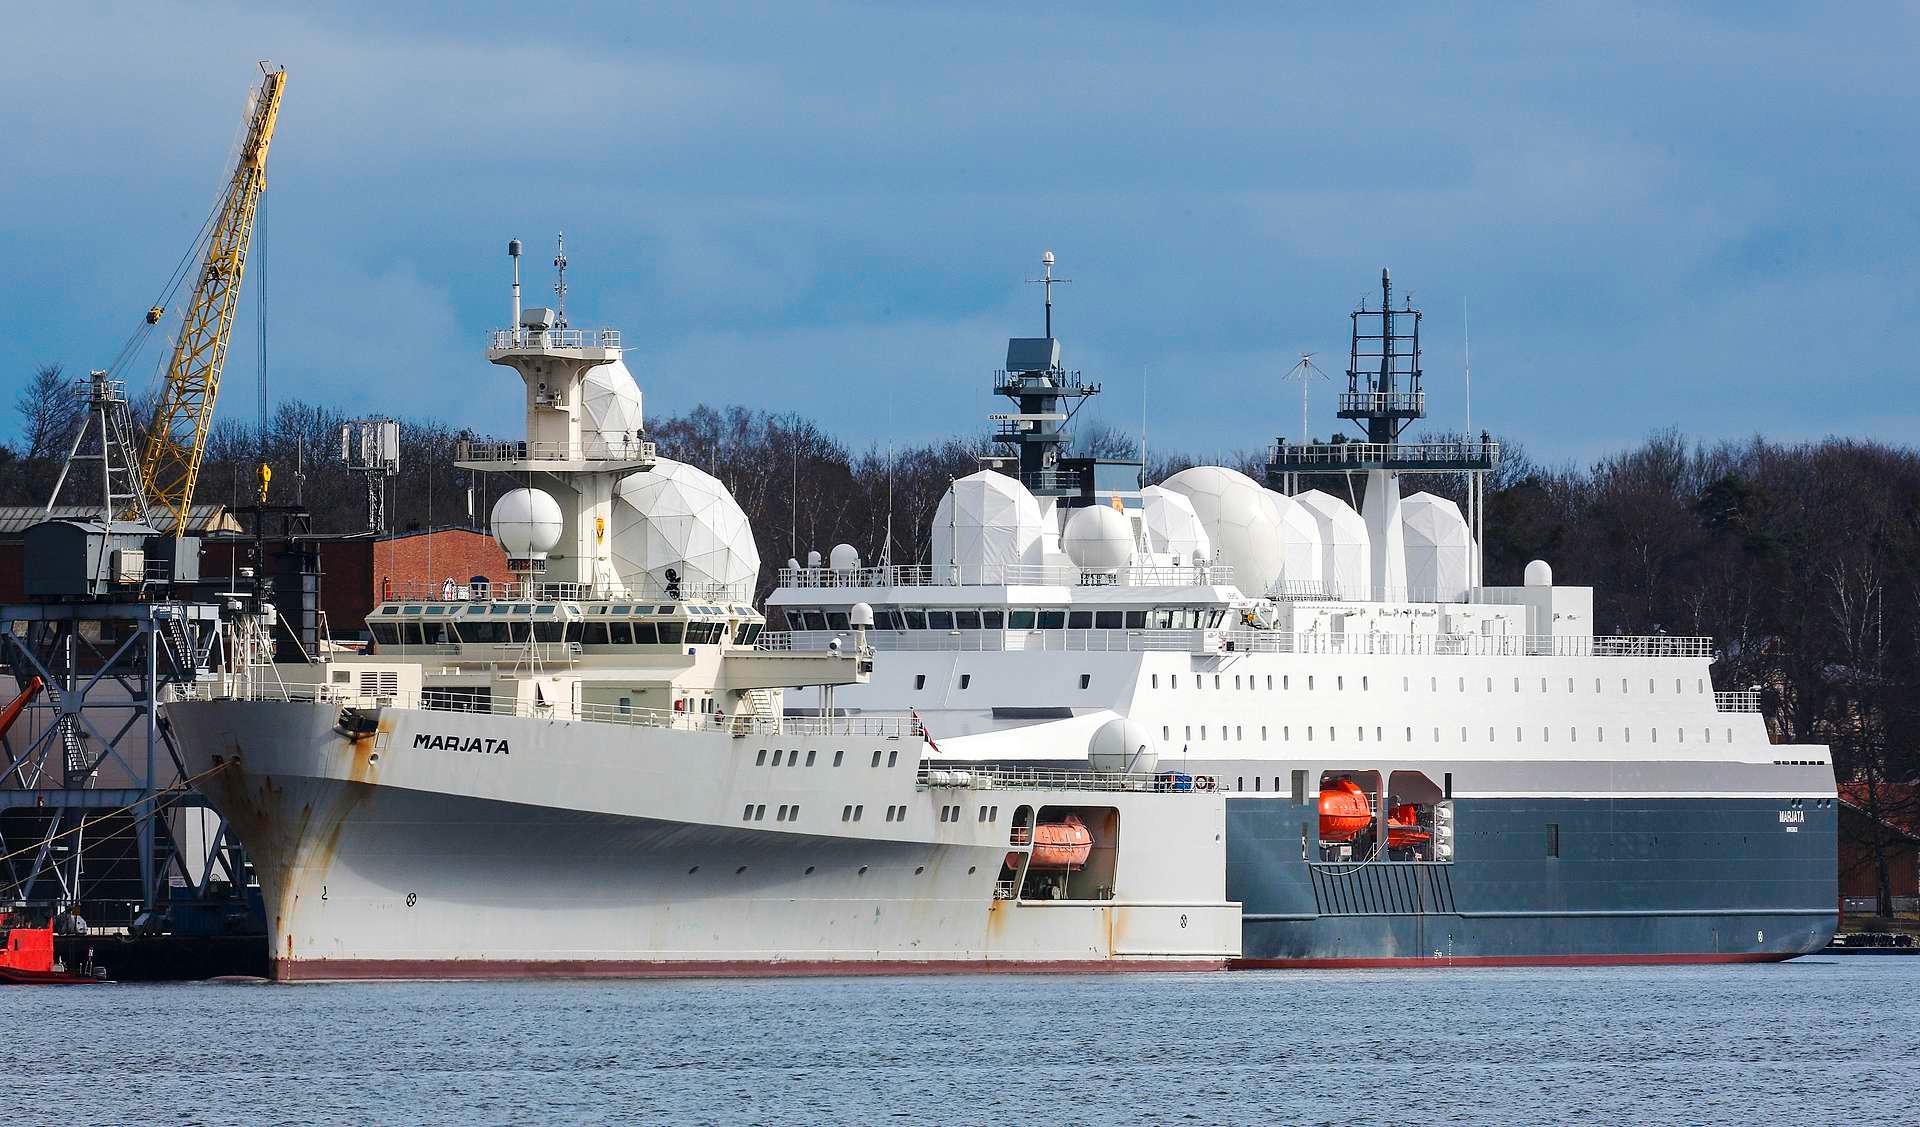 E-tjenestens to spionskip i norsk havn. Begge har som oppgave å følge russisk aktivitet, ikke minst øvelser av typen Zapad.